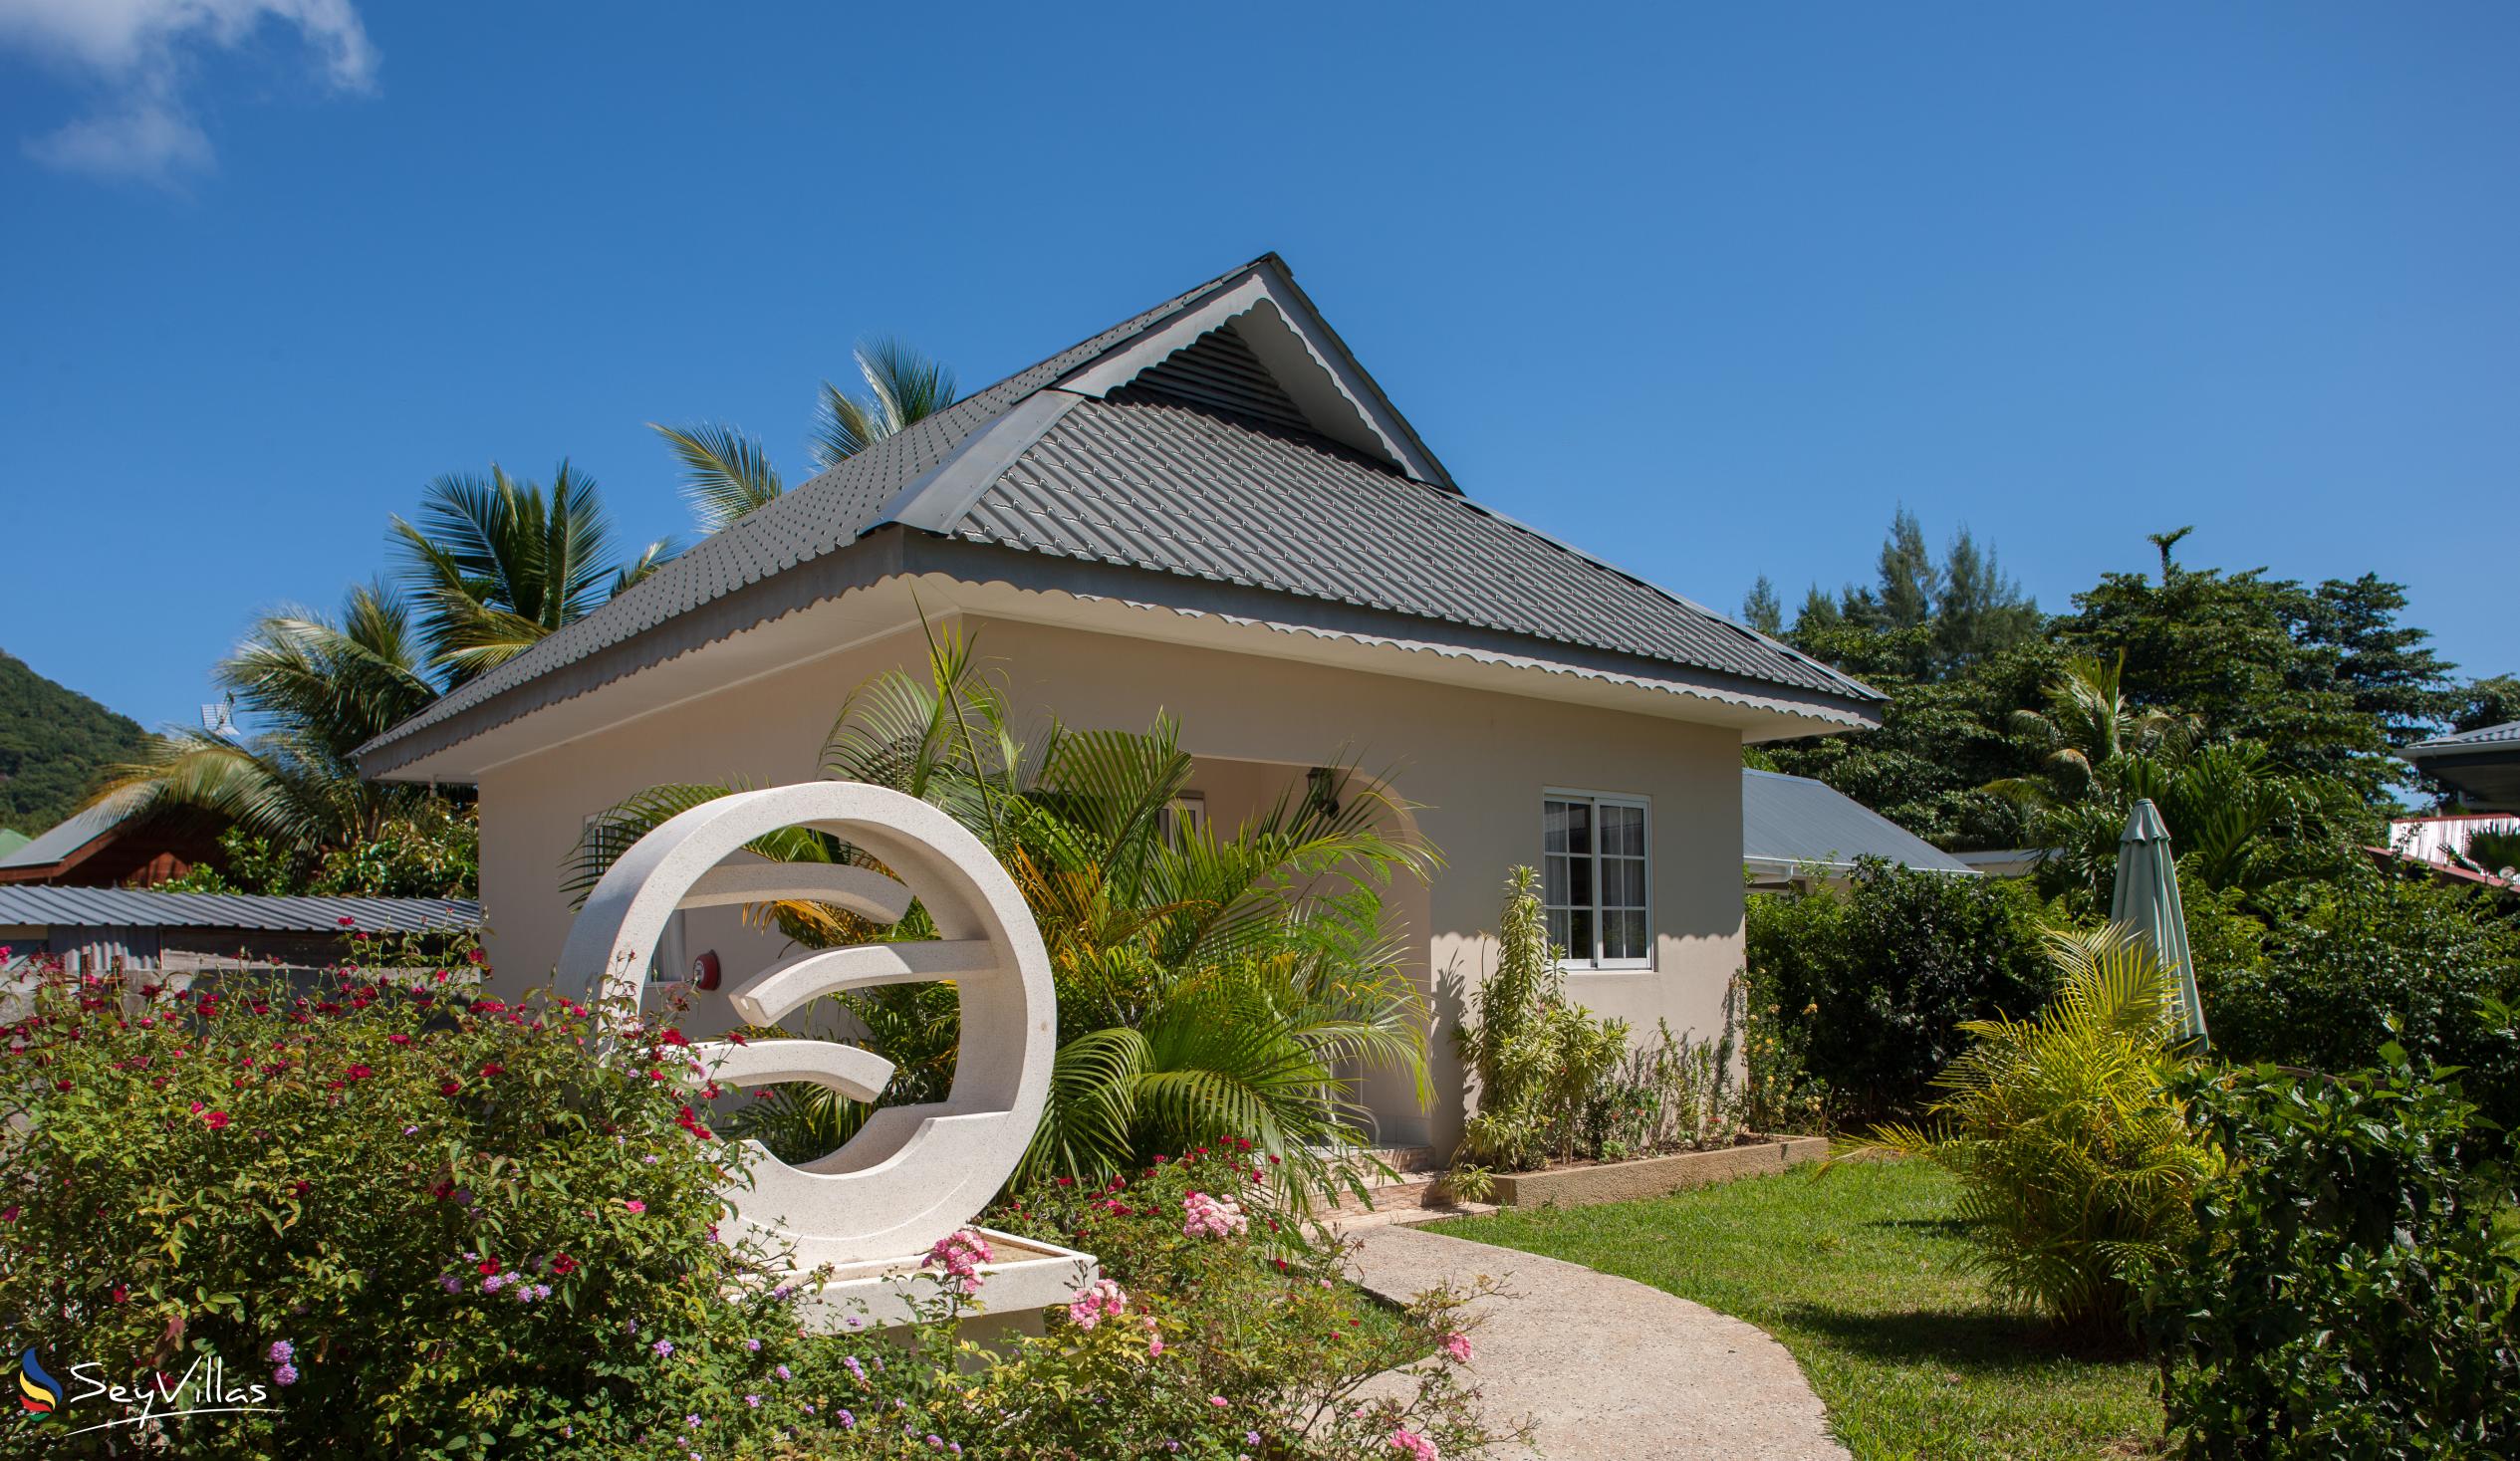 Foto 6: Villa Source D'Argent - Aussenbereich - La Digue (Seychellen)